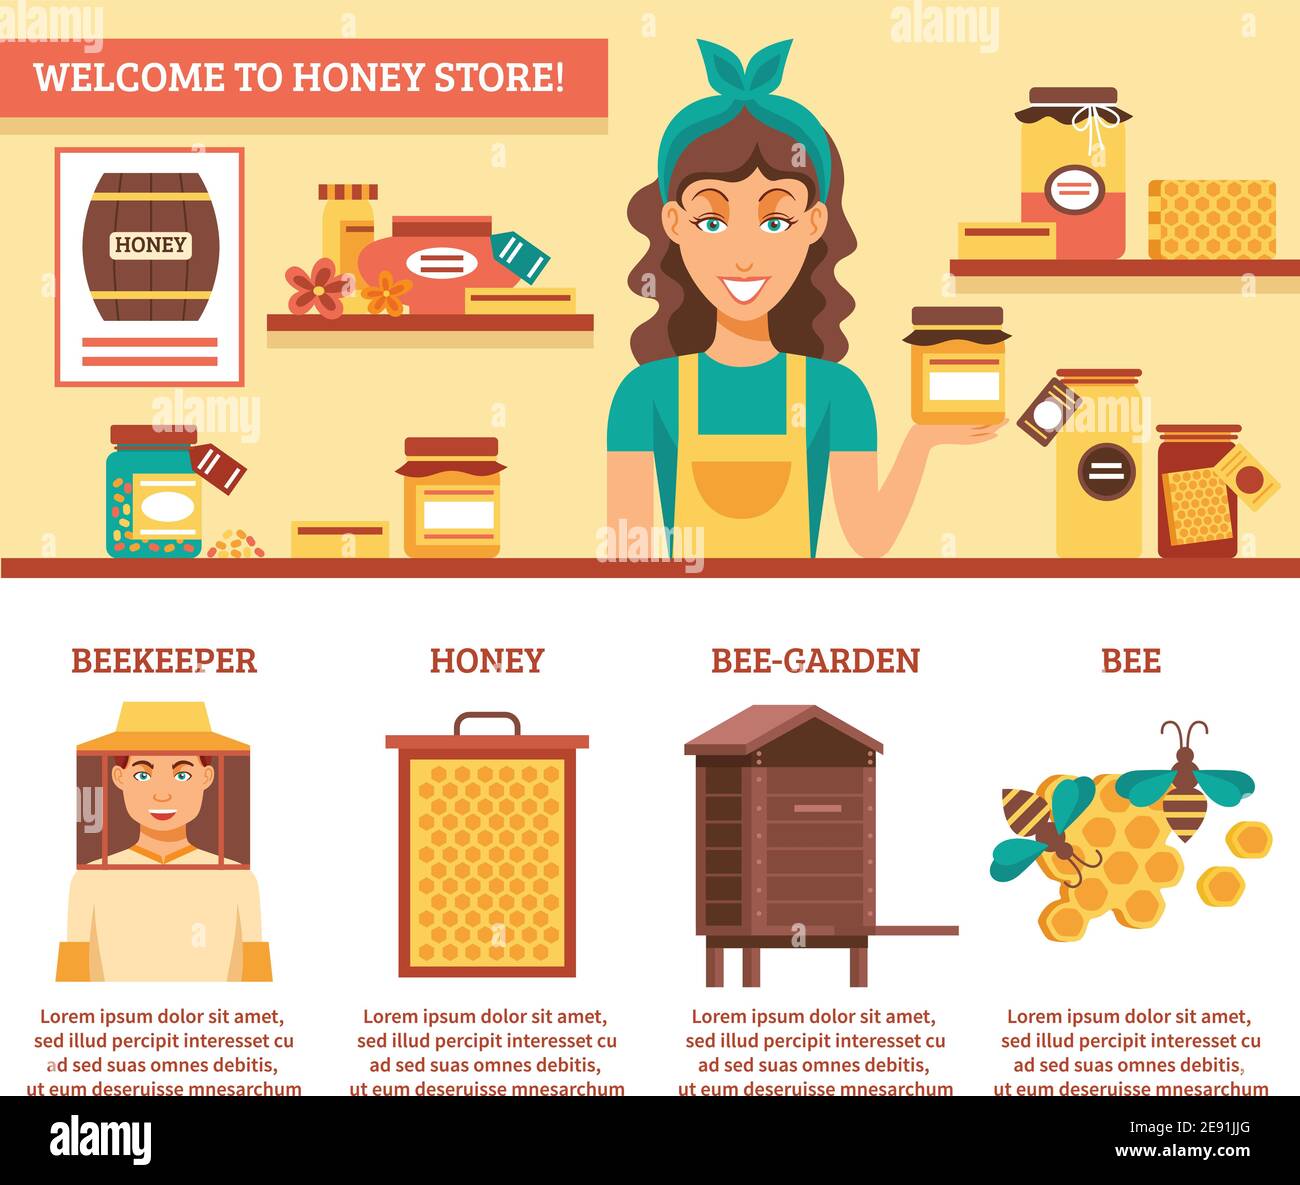 Beeheeping miel infographics avec descriptions de bienvenue à miel magasin et la liste des principaux composants pour l'illustration vectorielle de production de miel Illustration de Vecteur